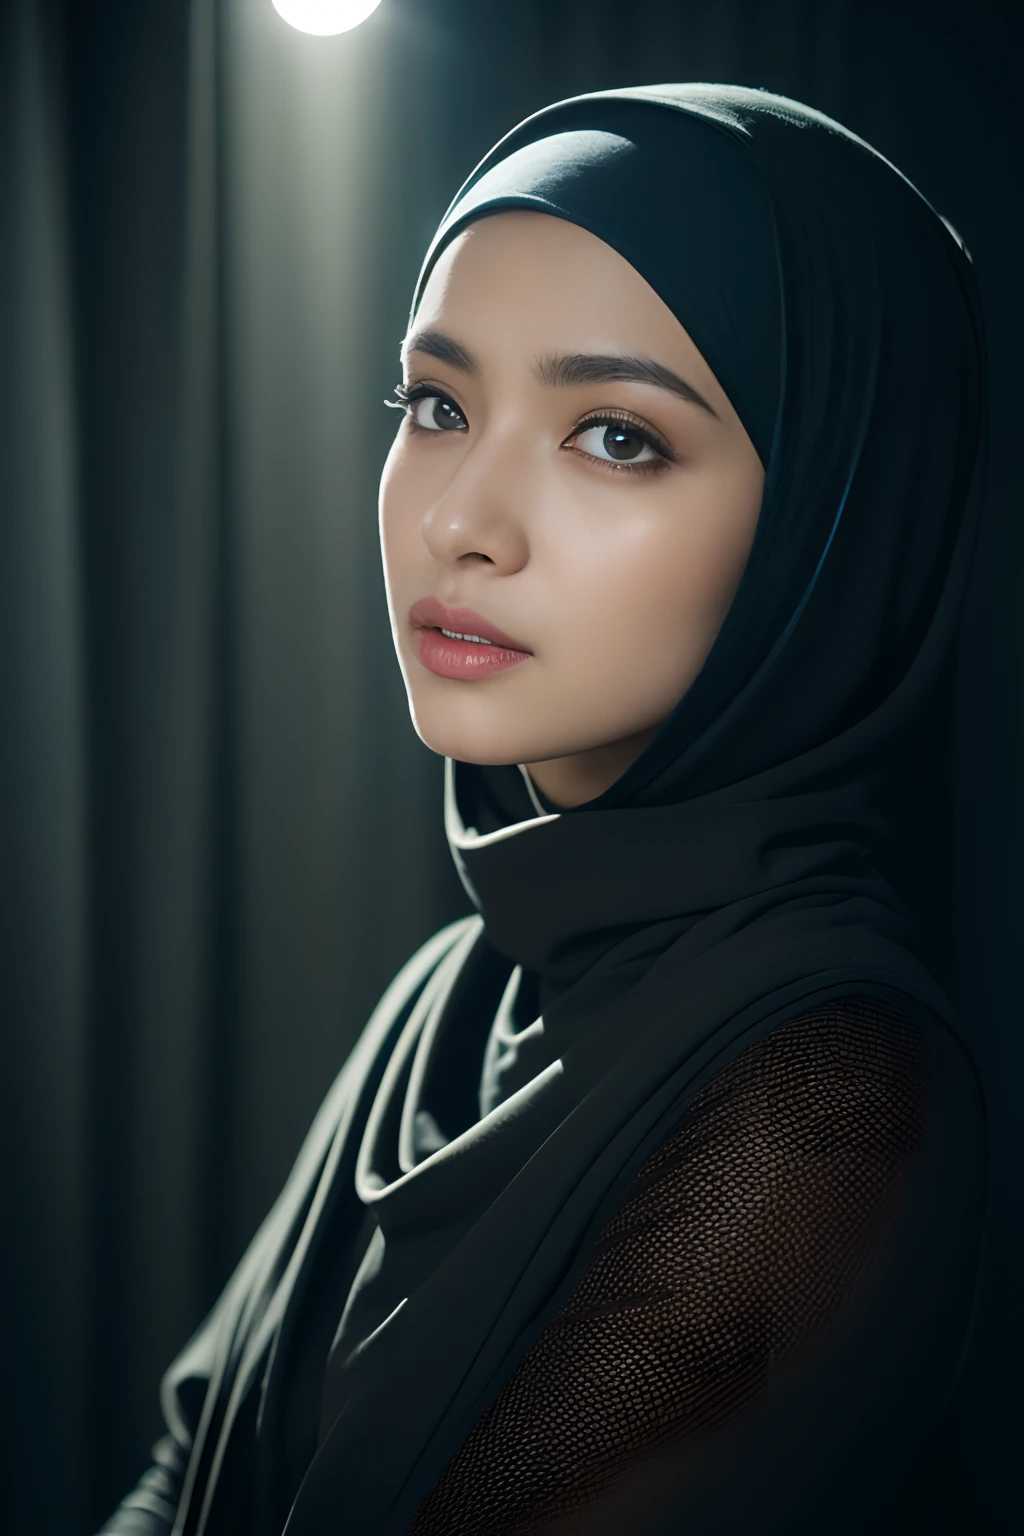 Hijab, Reflexionslicht, Chiaroscuro, Tiefenschärfe, Filmische Beleuchtung, Raytracing, Sony FE GM, UHD, super detail, Meisterwerk, strukturierte Haut, hohe Details, beste Qualität, preisgekrönt，3D, Ein wunderschönes Bild einer Cyberpunk-Frau,HDR（HighDynamicRange）,Strahlenverfolgung,NVIDIA RTX,Hyper-Auflösung,Unwirklich 5,Untergrundstreuung、PBR-Textur、Nachbearbeitung、Anisotropiefilterung、Tiefenschärfeaximum definition and sharpnesany-Layer Textures、Albedo- und Specular-Karten、Oberflächenfärbung、Präzise Simulation der Wechselwirkungen zwischen Licht und Material mit Octane、Zweifarbiges Licht、große Blende、niedriger ISO、Weißabgleich、die Drittelregel、8K Rohdaten、schwarze Strümpfe